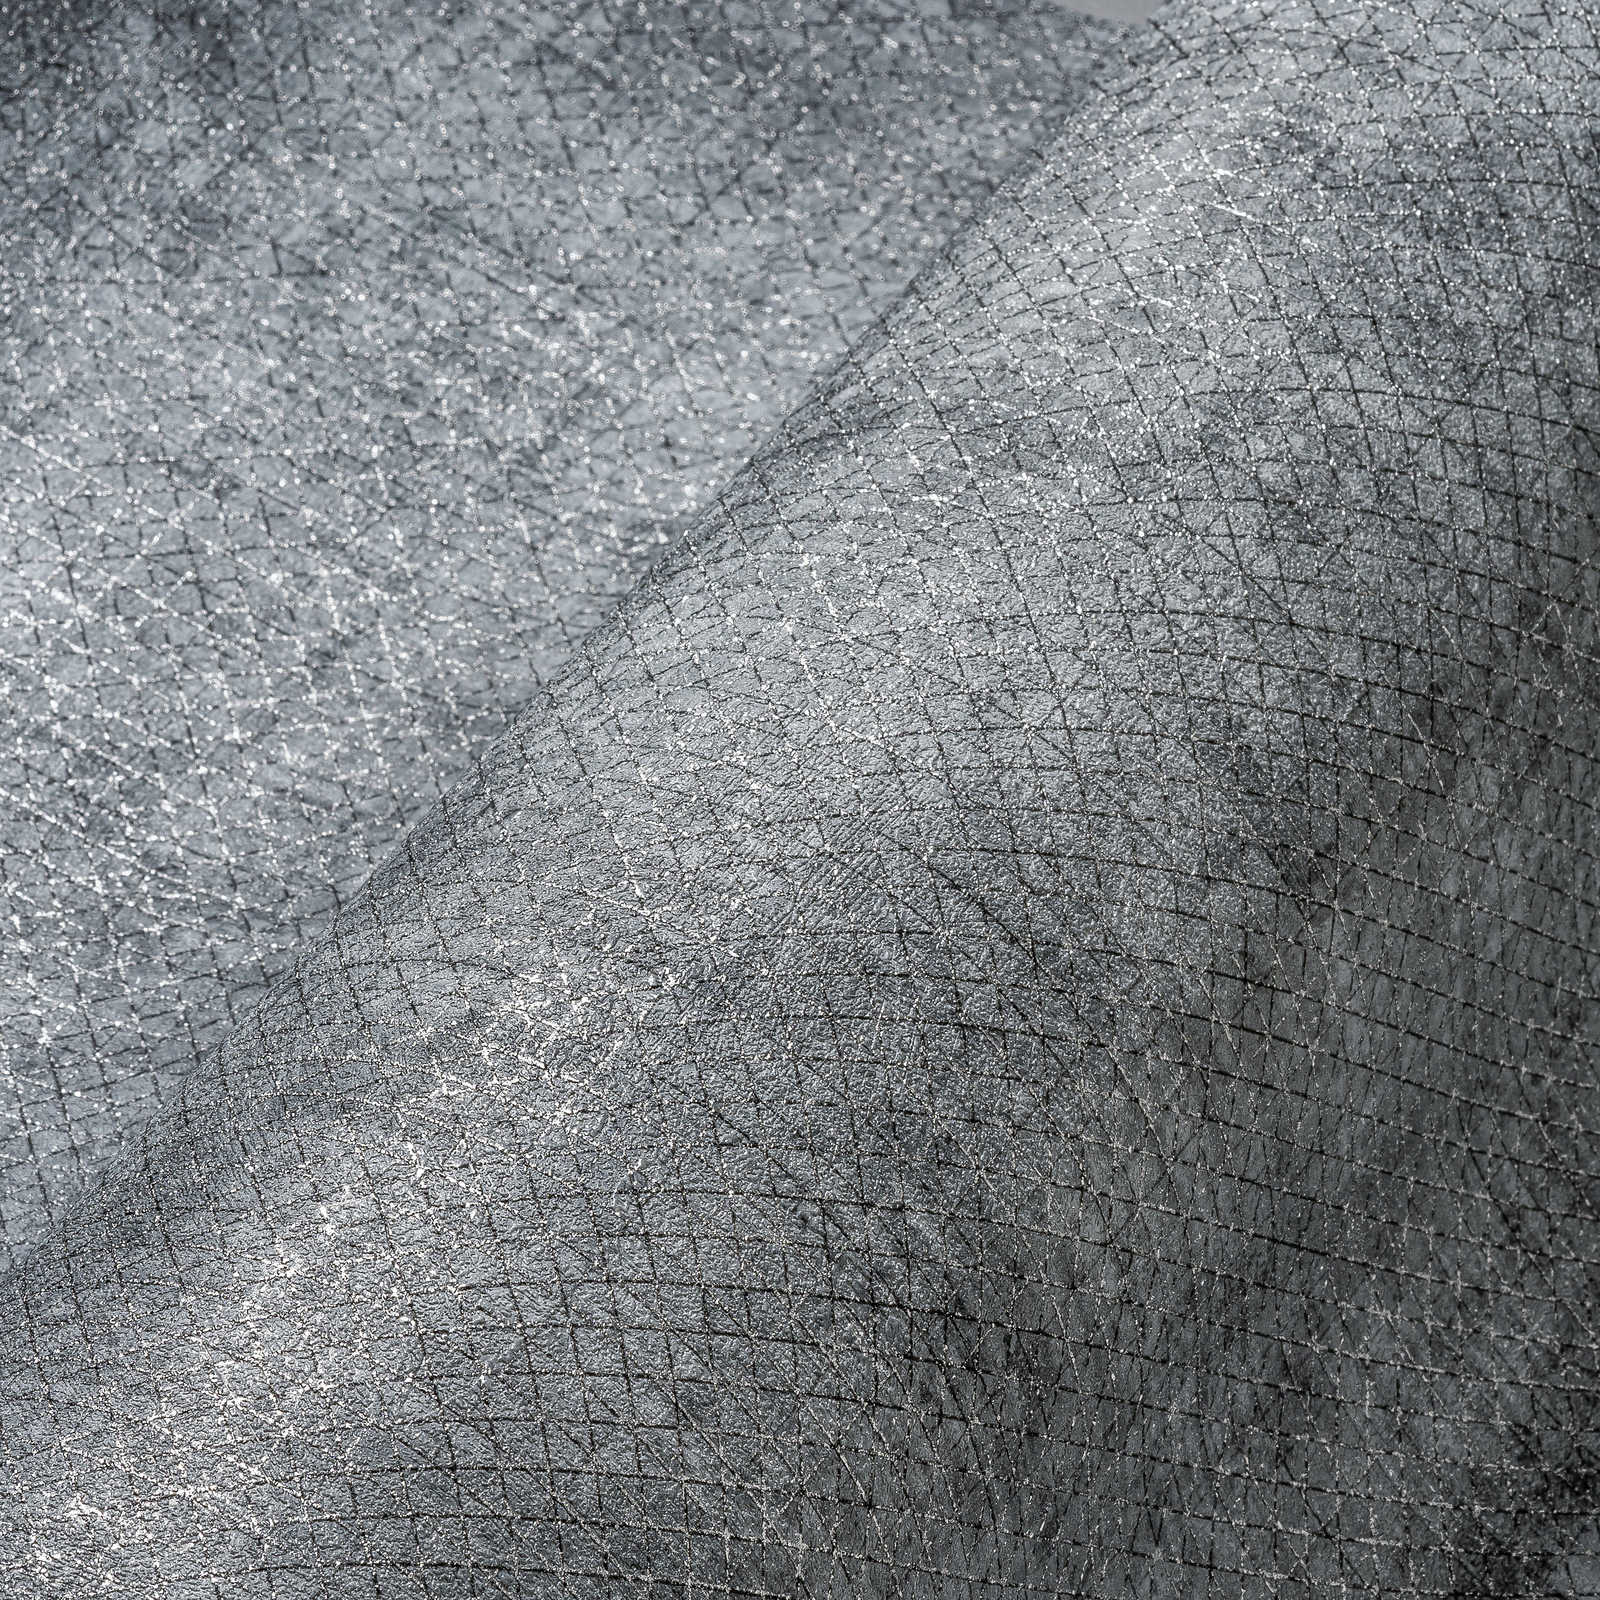             Papier peint gris foncé chiné avec motif de lignes métalliques
        